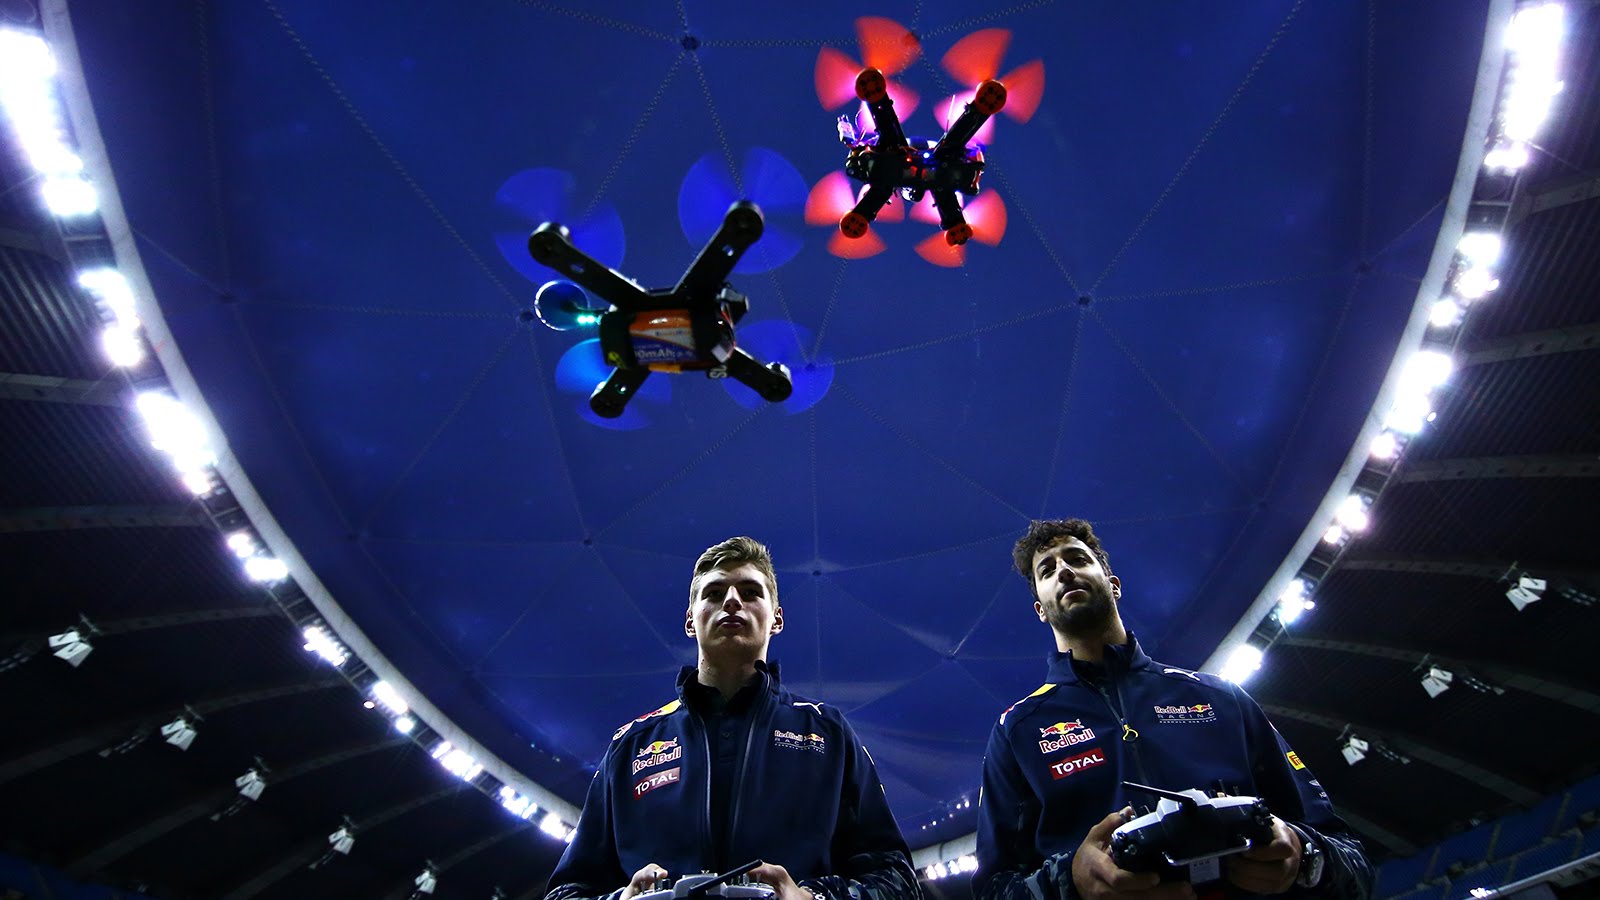 Daniel Ricciardo and Max Verstappen Drone On